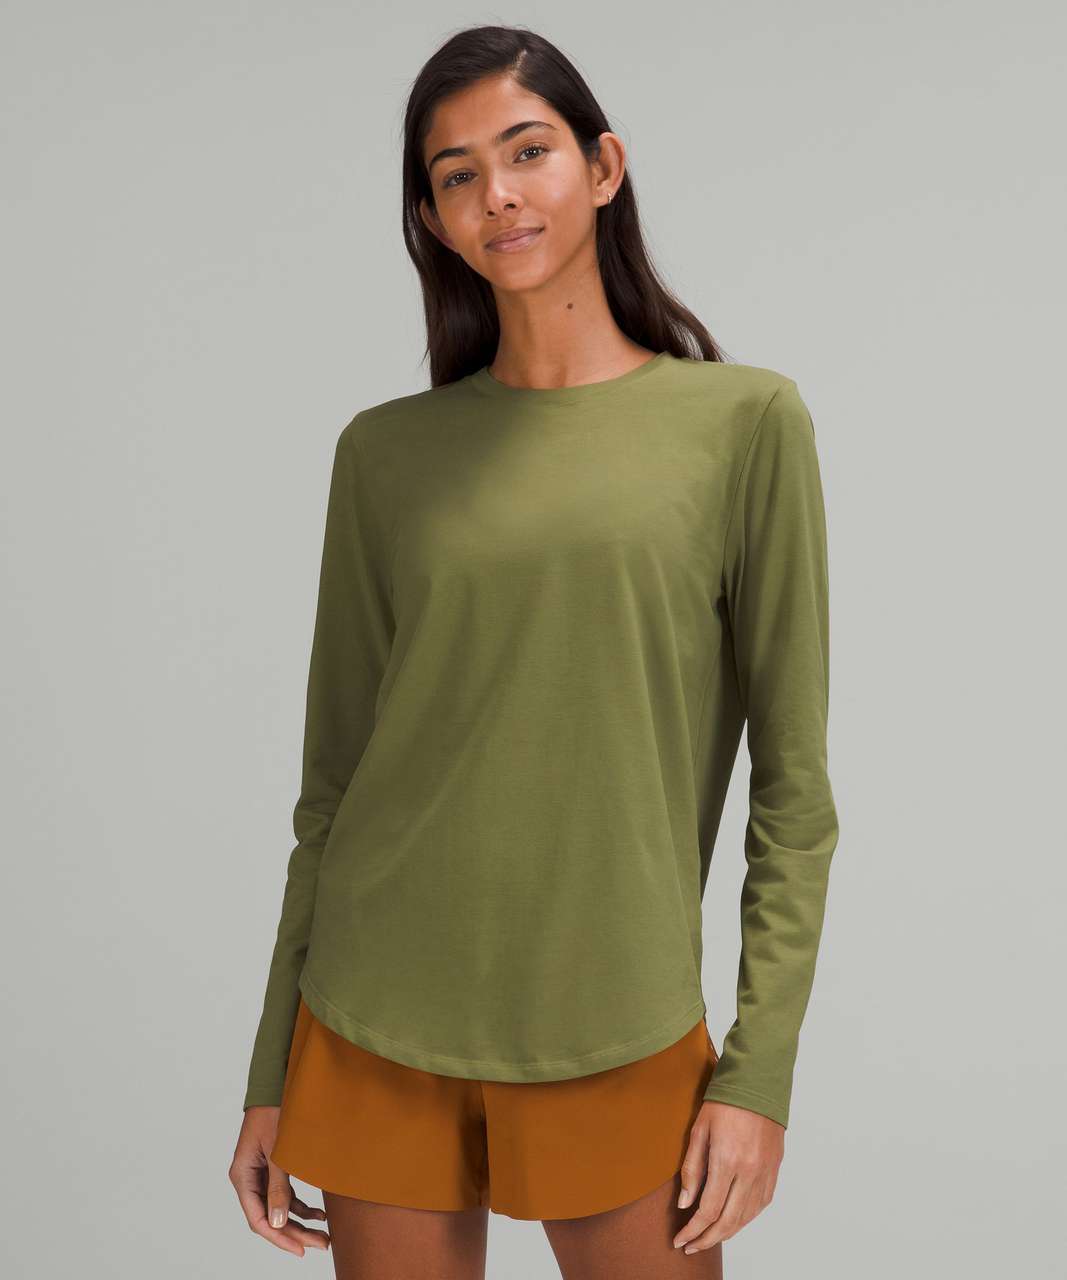 Lululemon Love Long Sleeve Shirt - Bronze Green